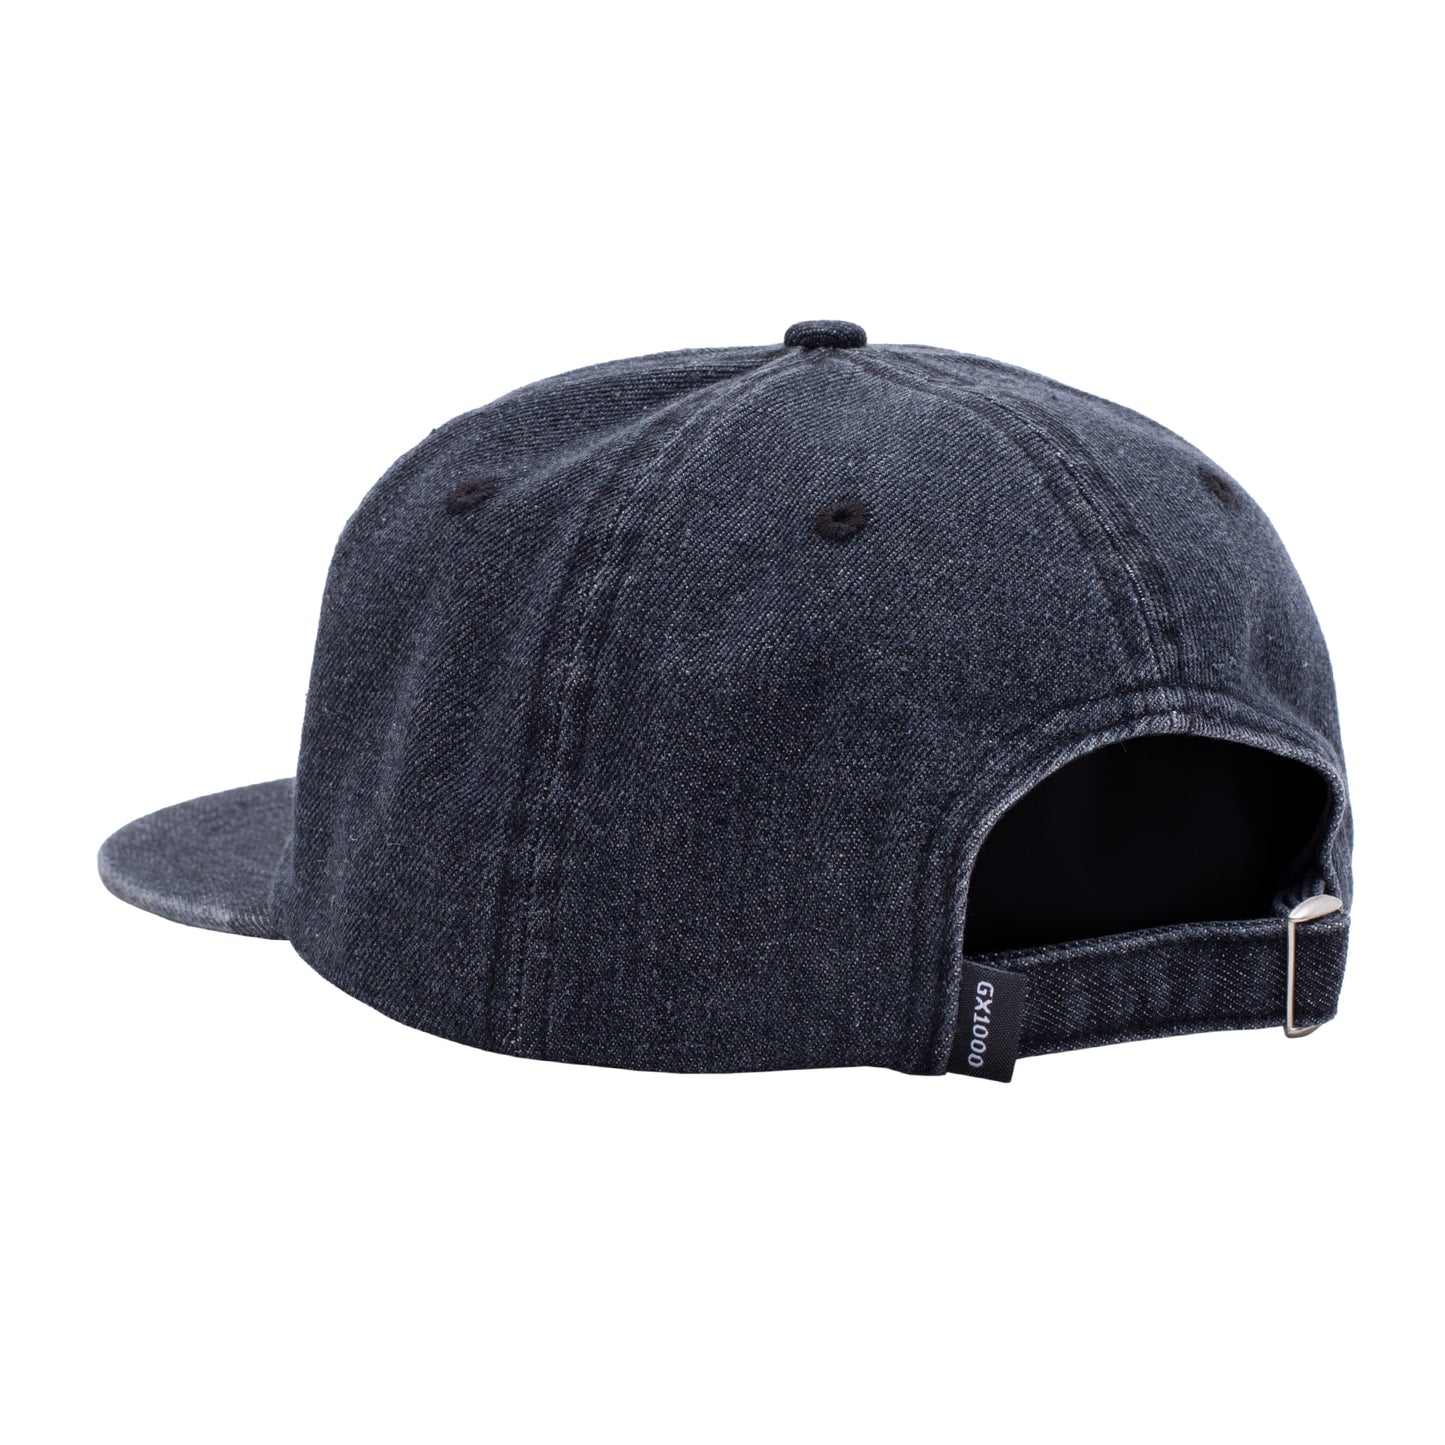 GX1000 - Tag Hat Black Wash